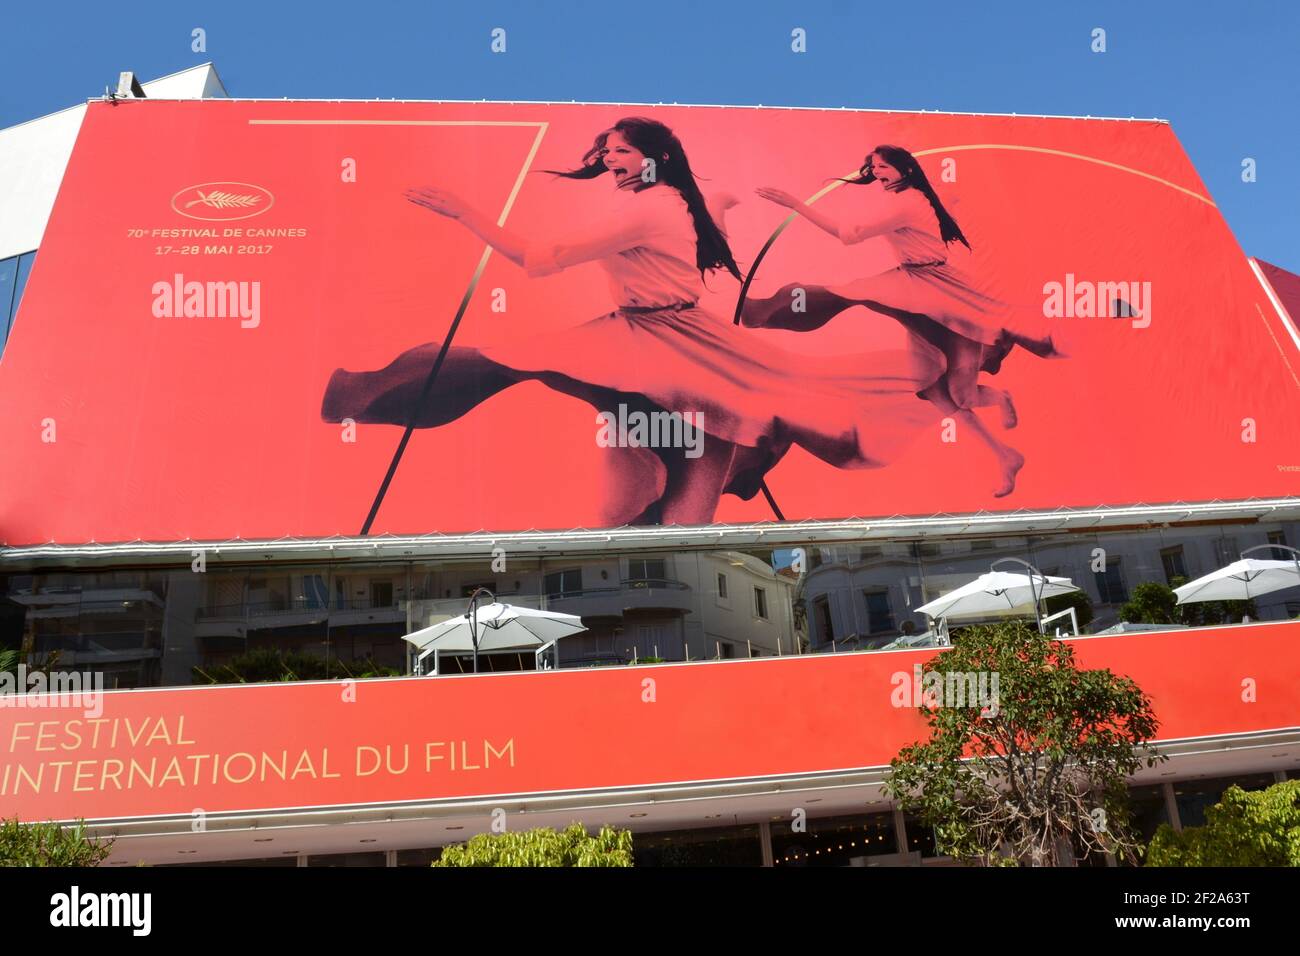 Frankreich, französisch riveira, Cannes, das offizielle Plakat für die Internationalen Filmfestspiele 70th, die für diese Ausgabe ausgewählte Künstlerin ist Claudia CARDINALE. Stockfoto